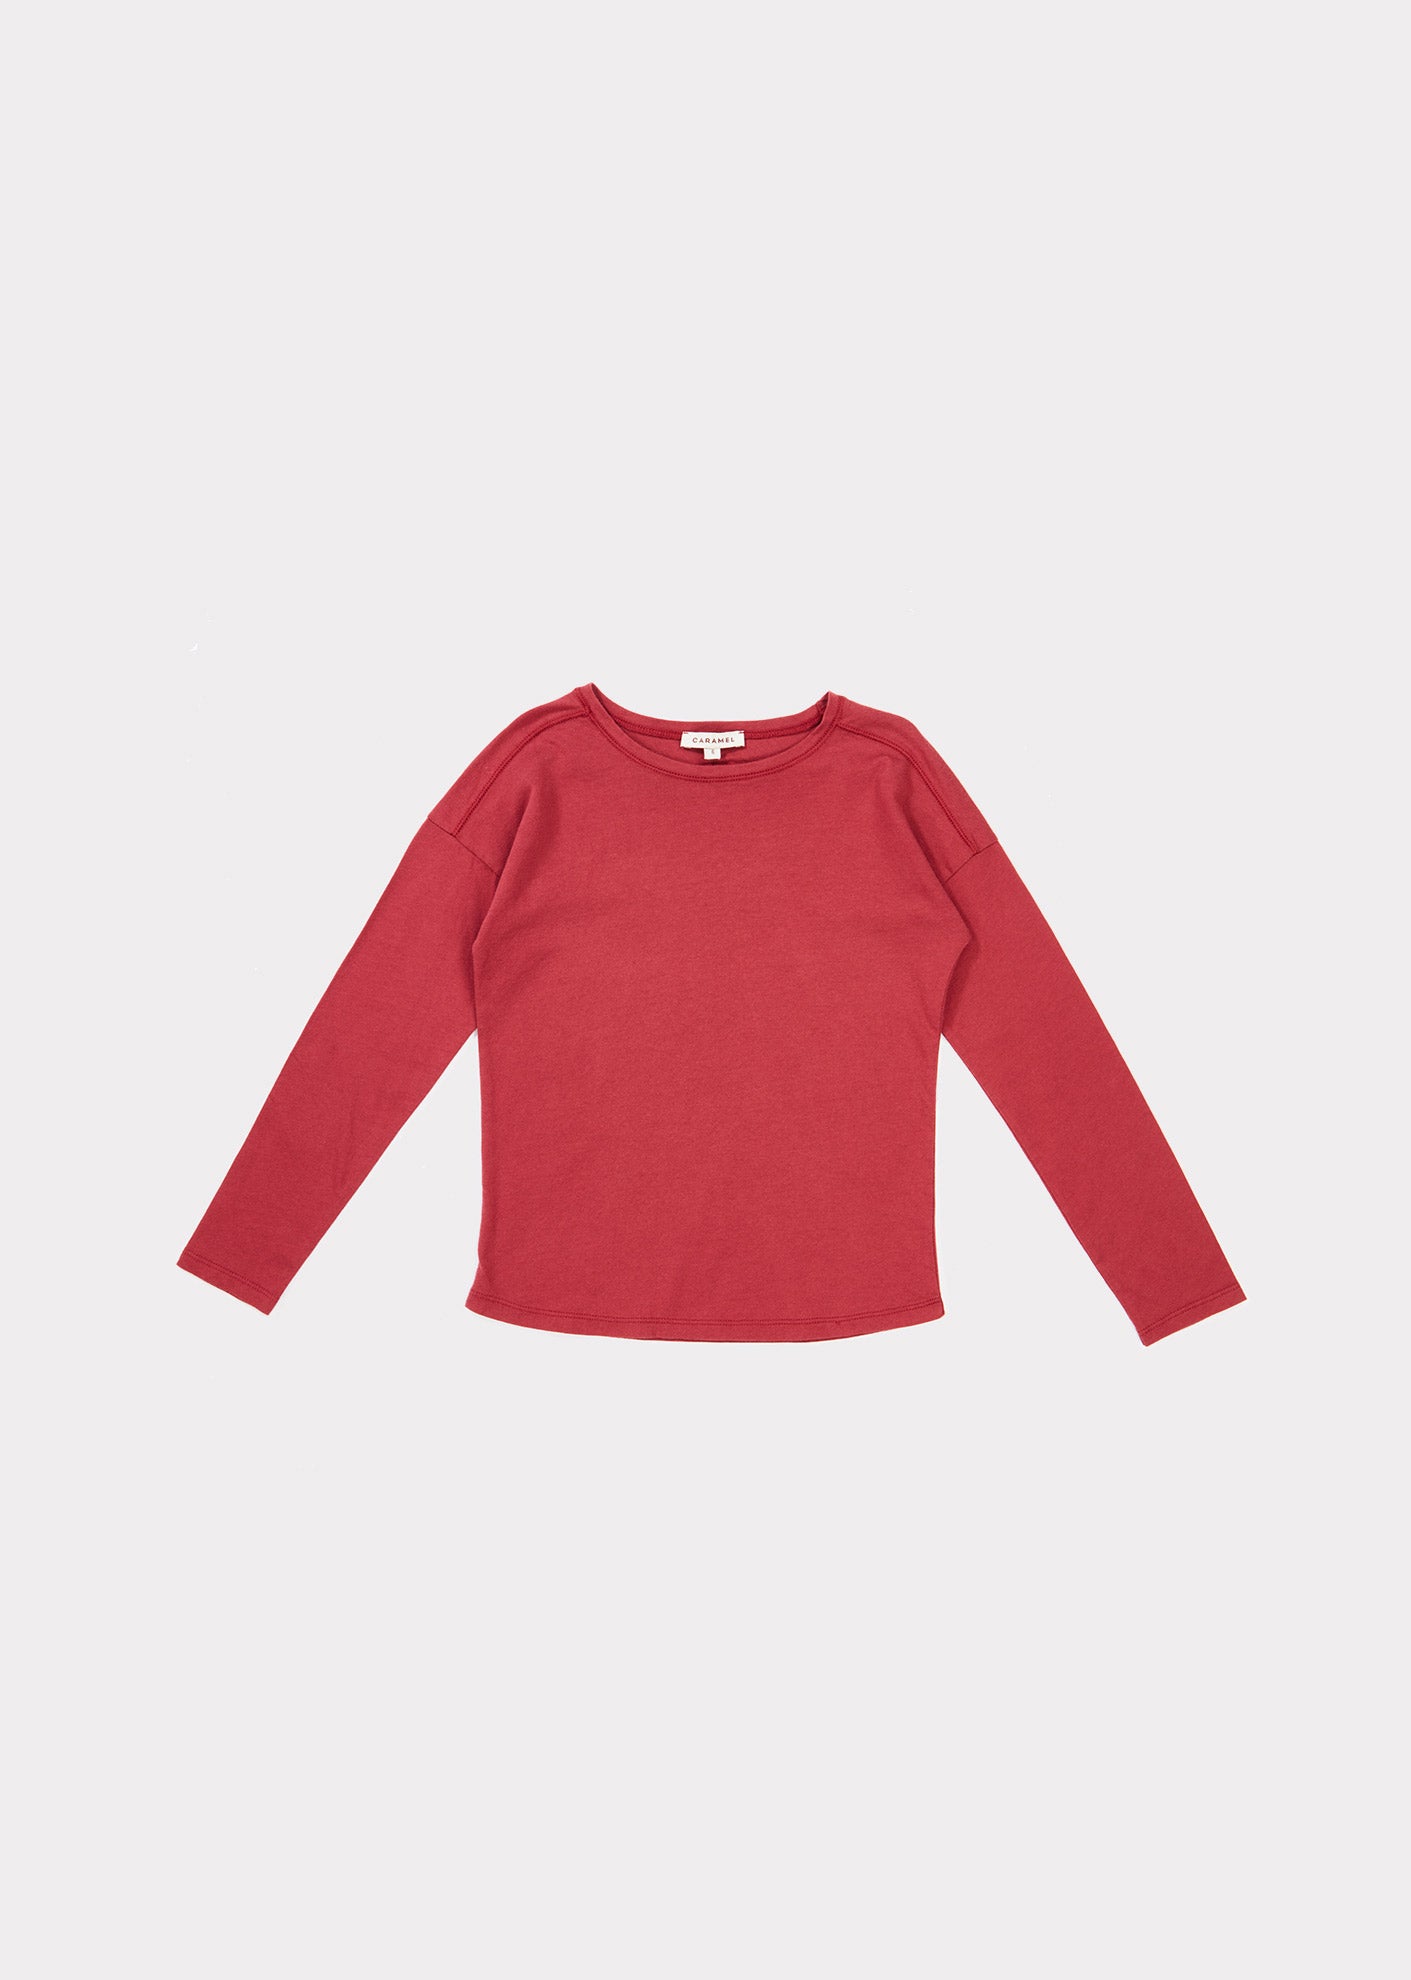 Girls Dark Red Cotton Shirt